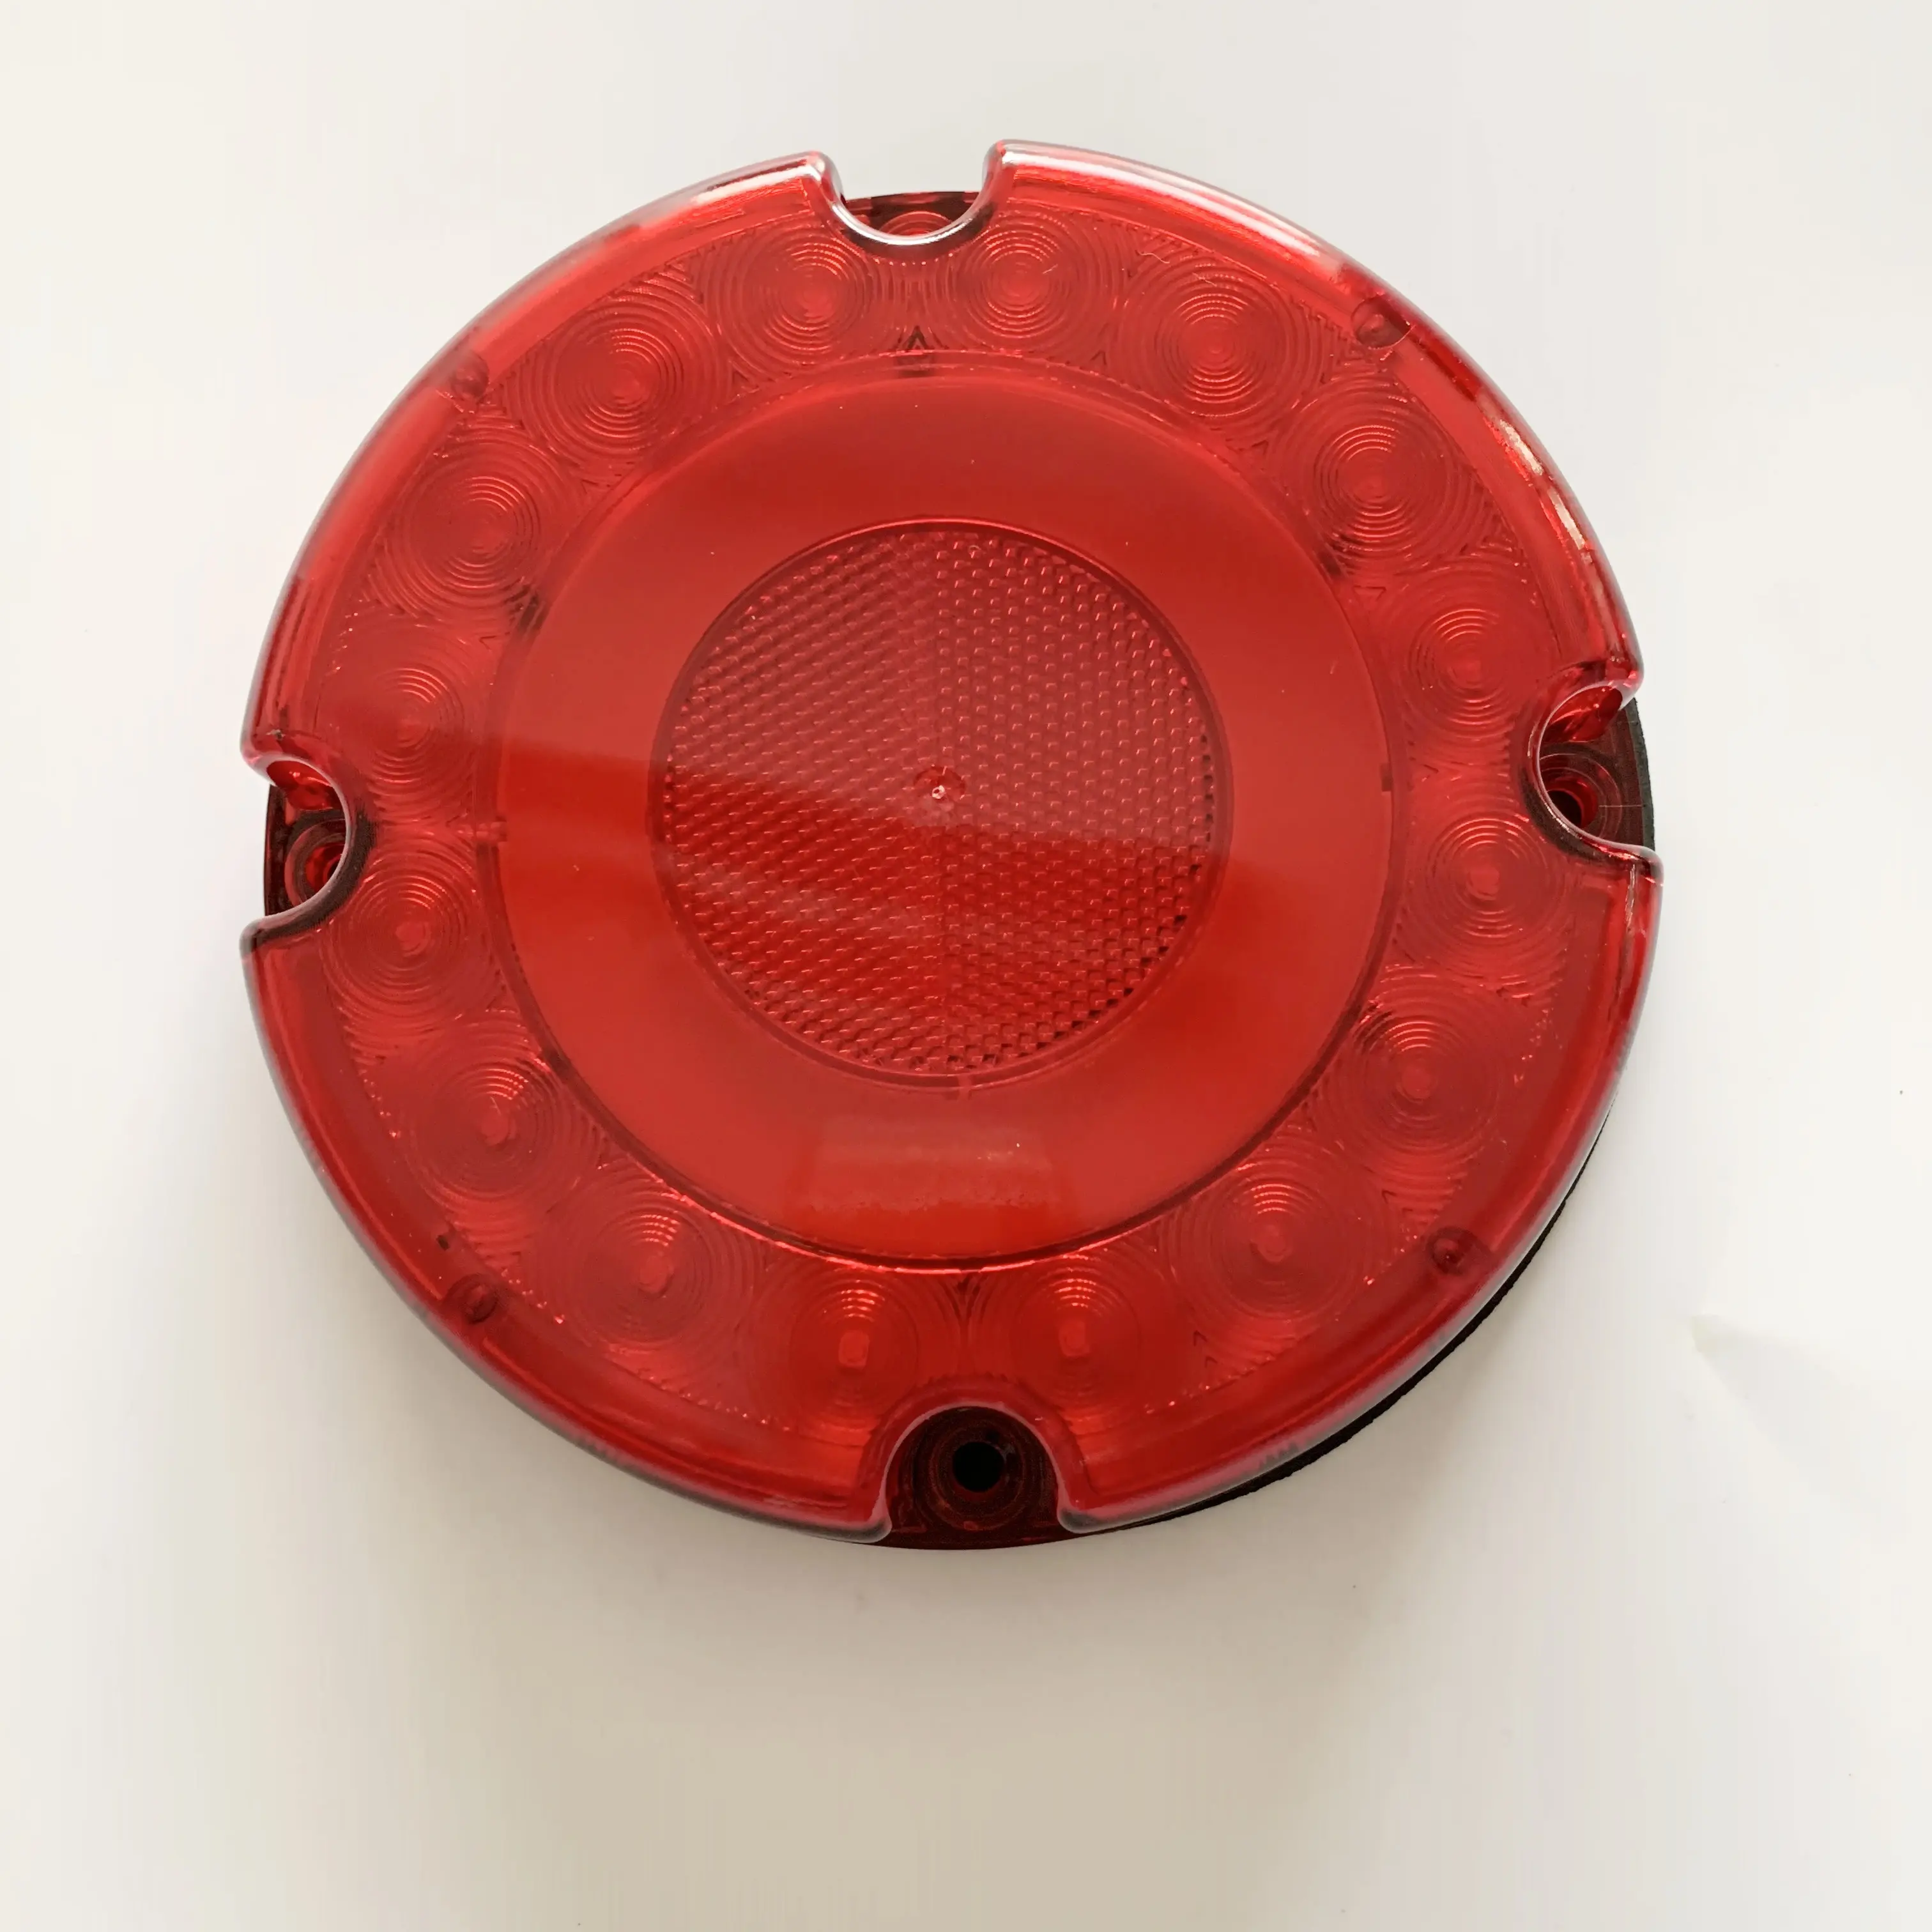 Runde 7-Zoll-LED-Anhänger-Rücklichter passen für Schulbus-und Zuflucht schlepper und alle Automobile Geräte Gleichstrom 10-30V